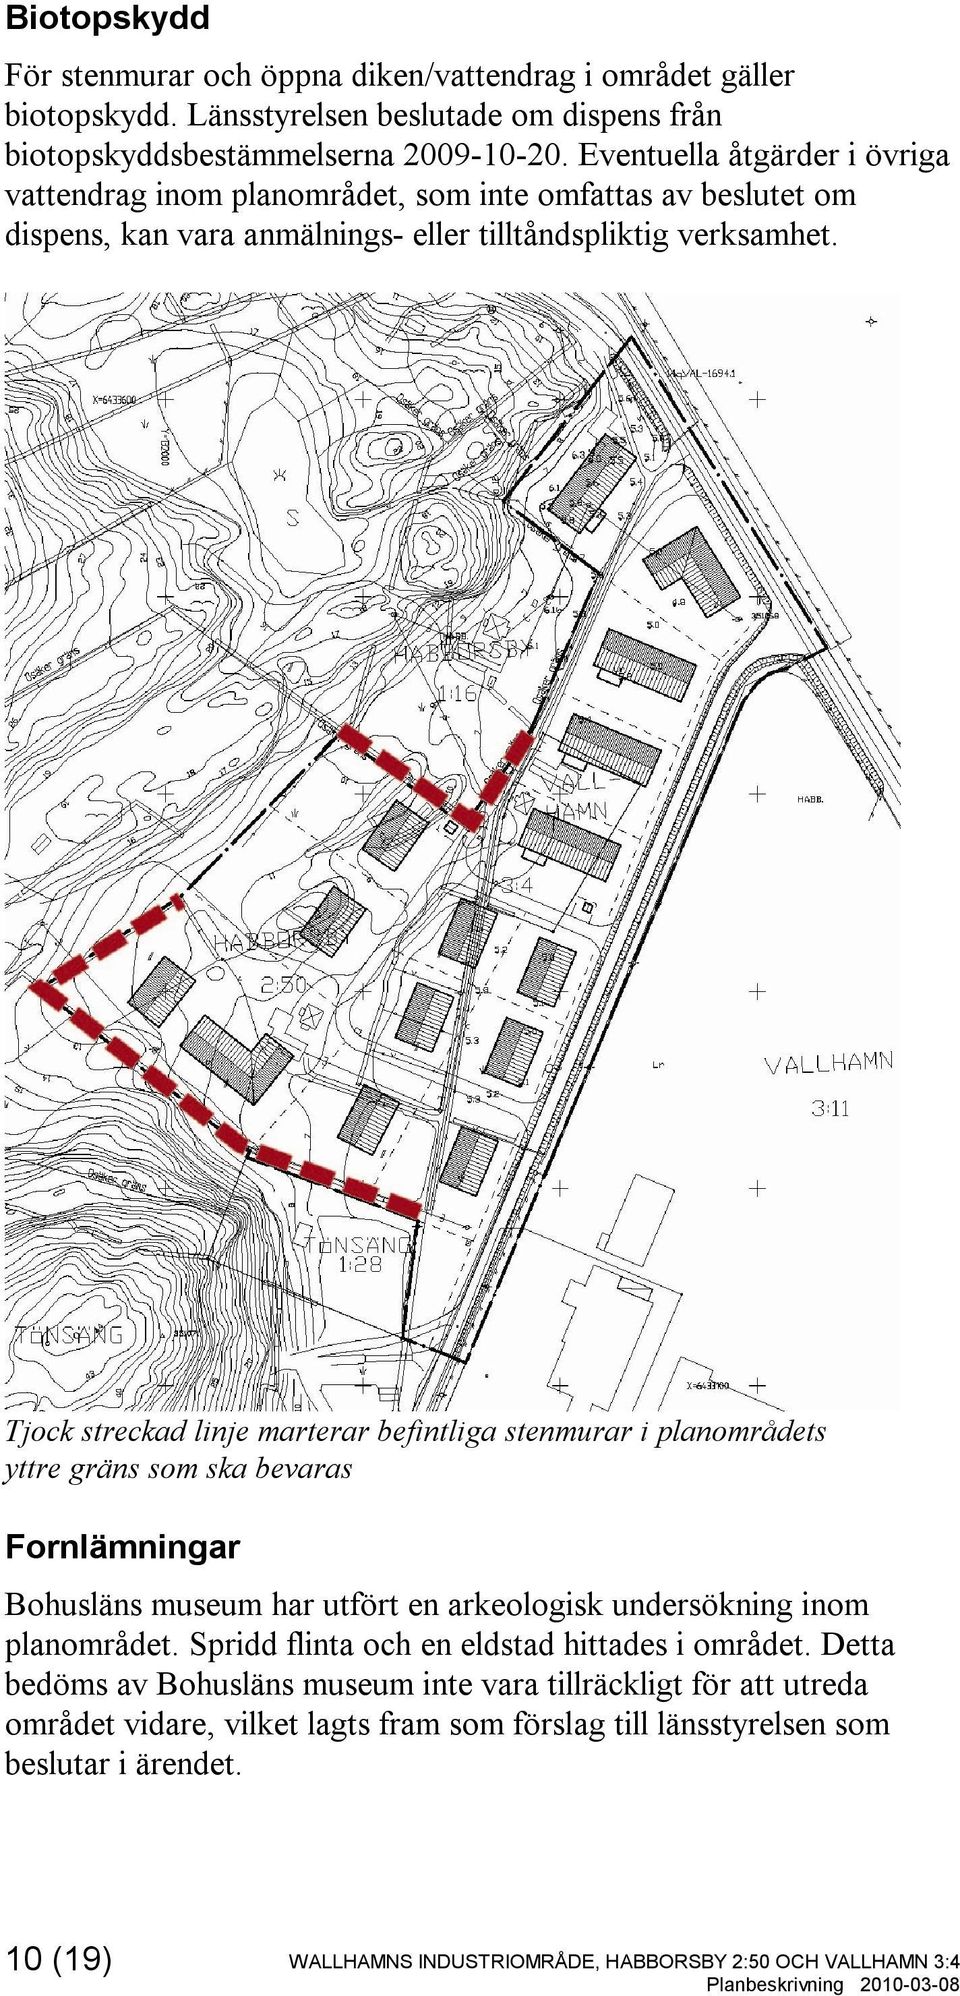 Tjock streckad linje marterar befintliga stenmurar i planområdets yttre gräns som ska bevaras Fornlämningar Bohusläns museum har utfört en arkeologisk undersökning inom